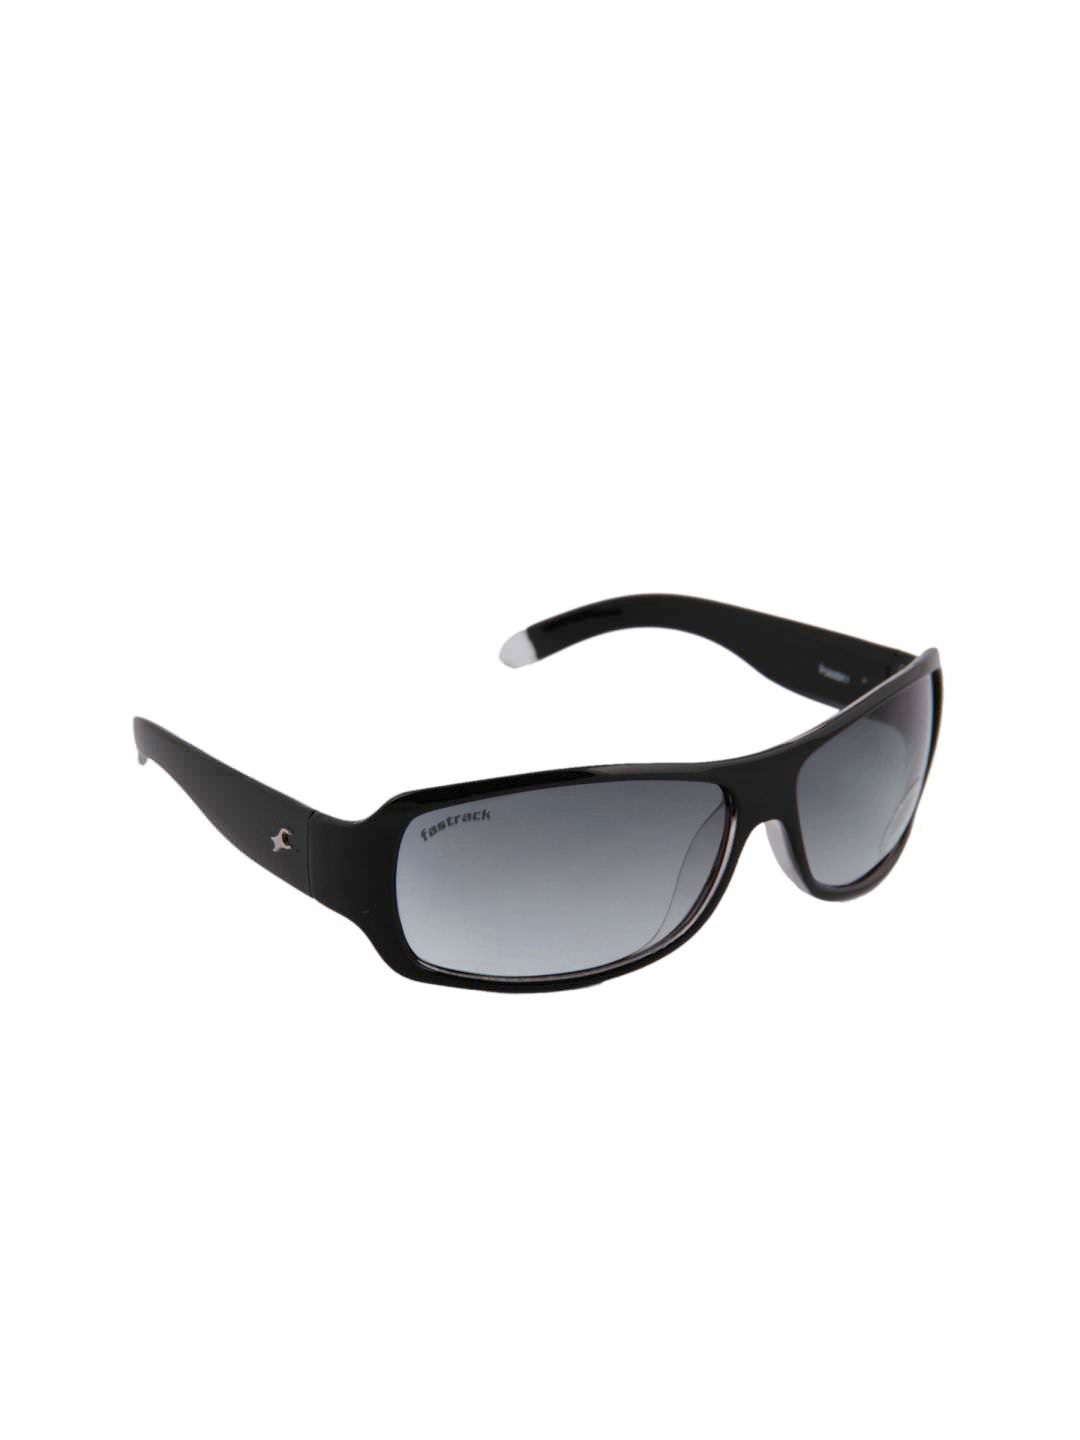 Fastrack Unisex Sunglasses Price in India